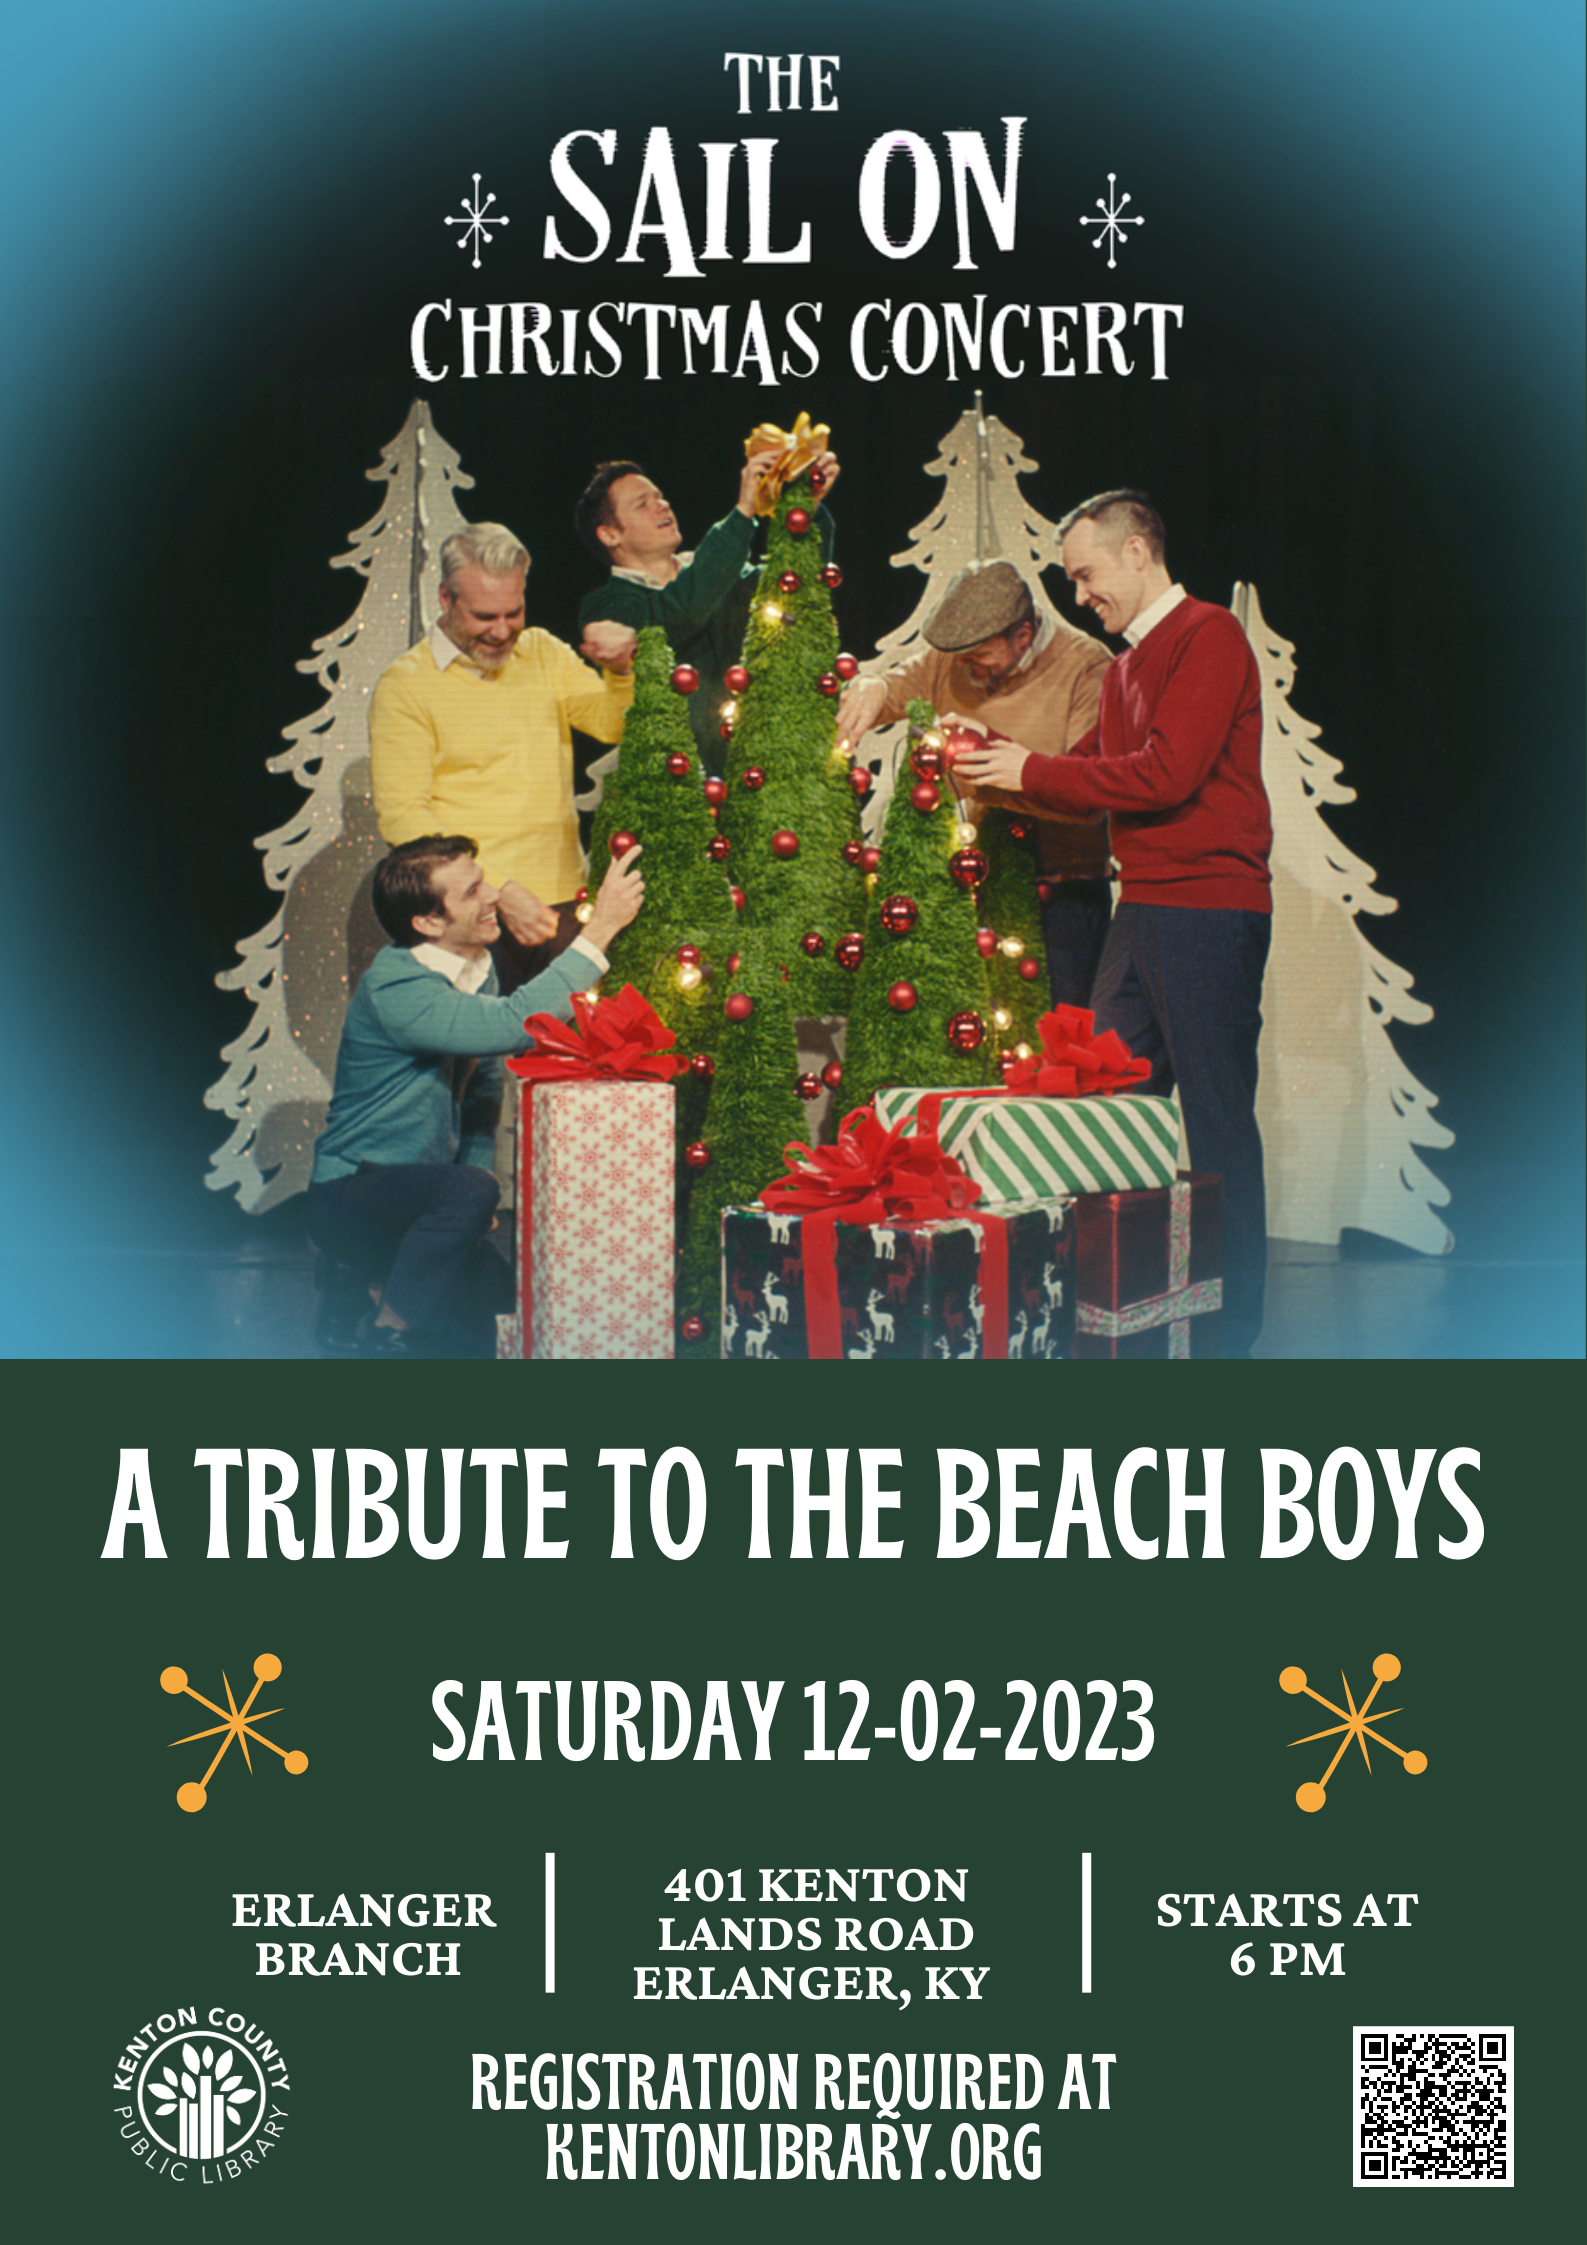 O Christmas Tree, O Christmas Tree? - Newport Beach News